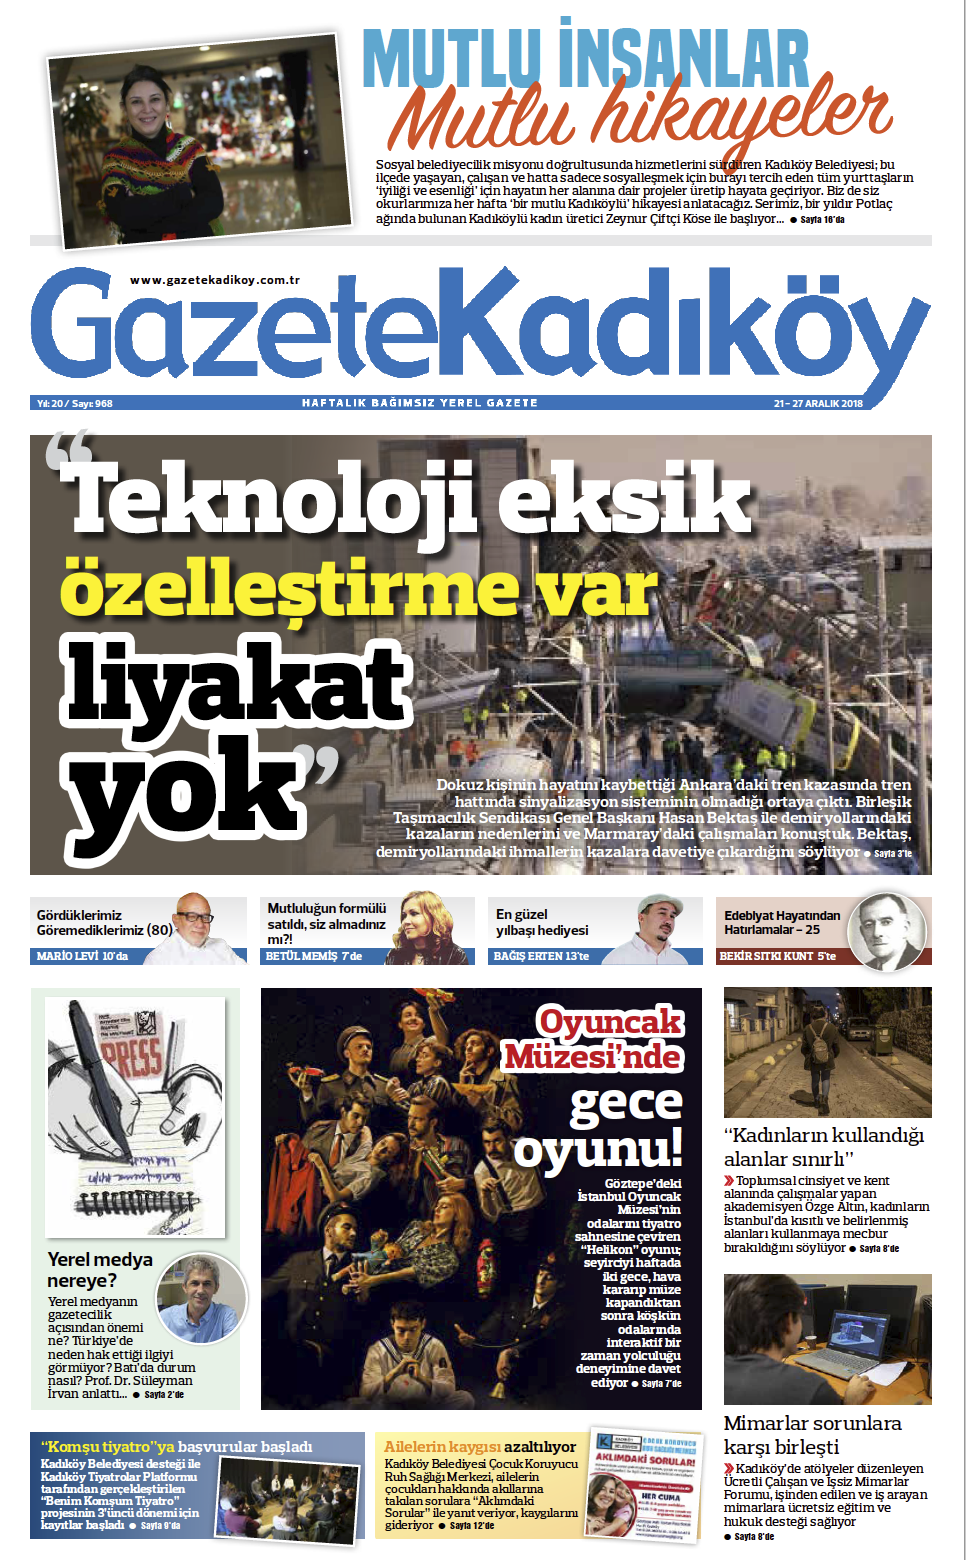 Gazete Kadıköy - 968. SAYI